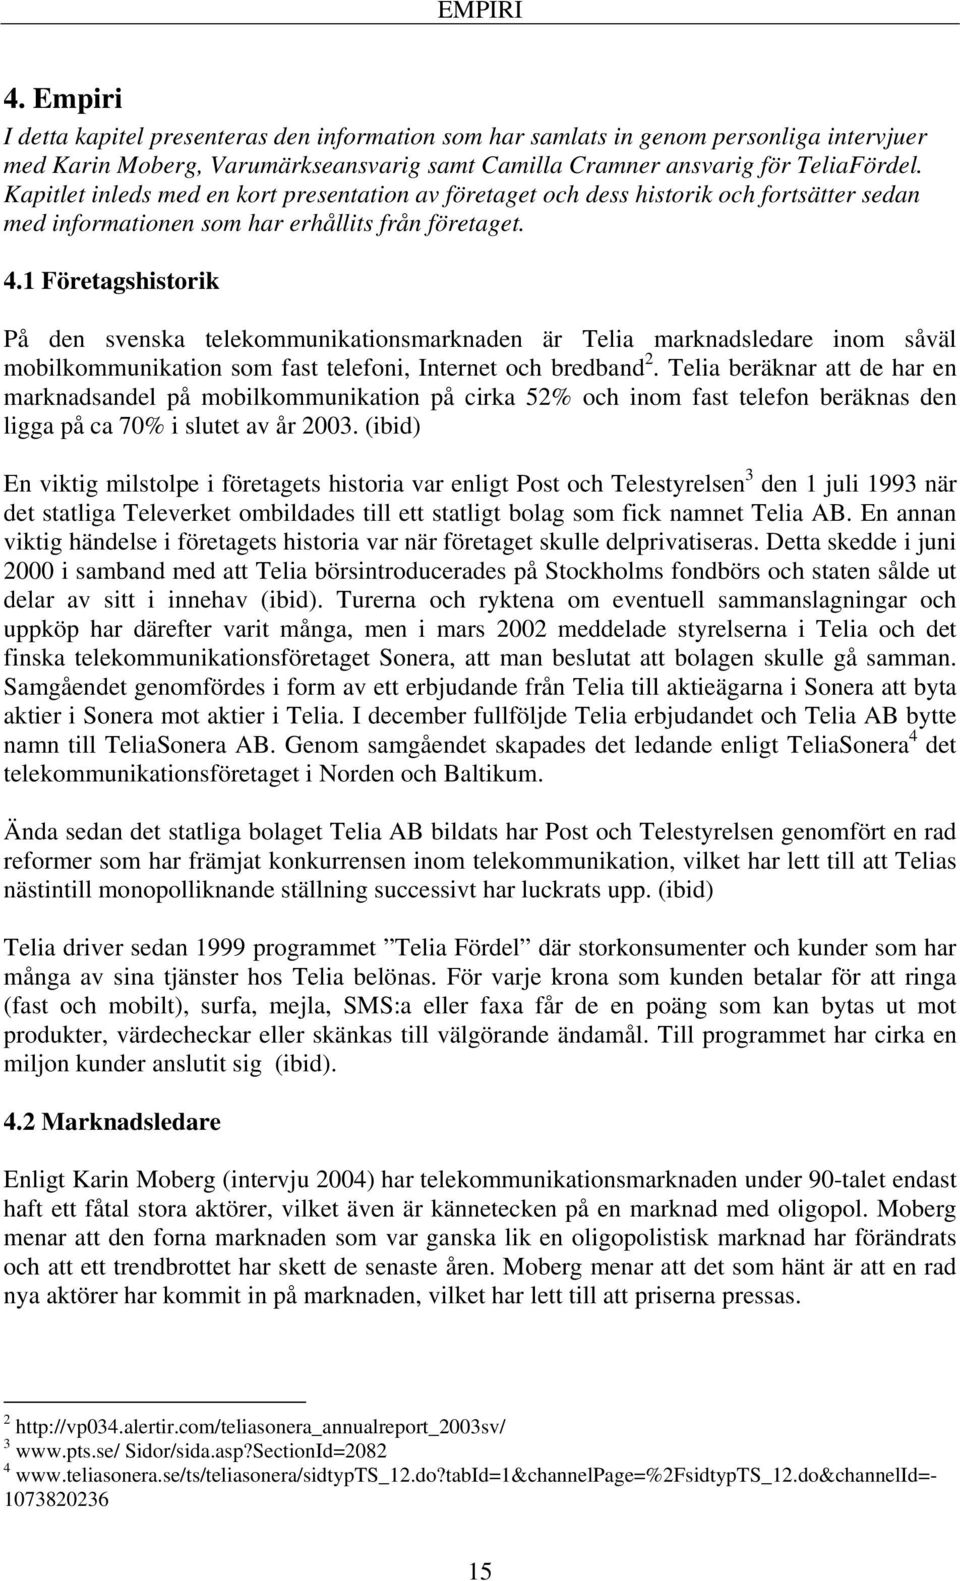 1 Företagshistorik På den svenska telekommunikationsmarknaden är Telia marknadsledare inom såväl mobilkommunikation som fast telefoni, Internet och bredband 2.